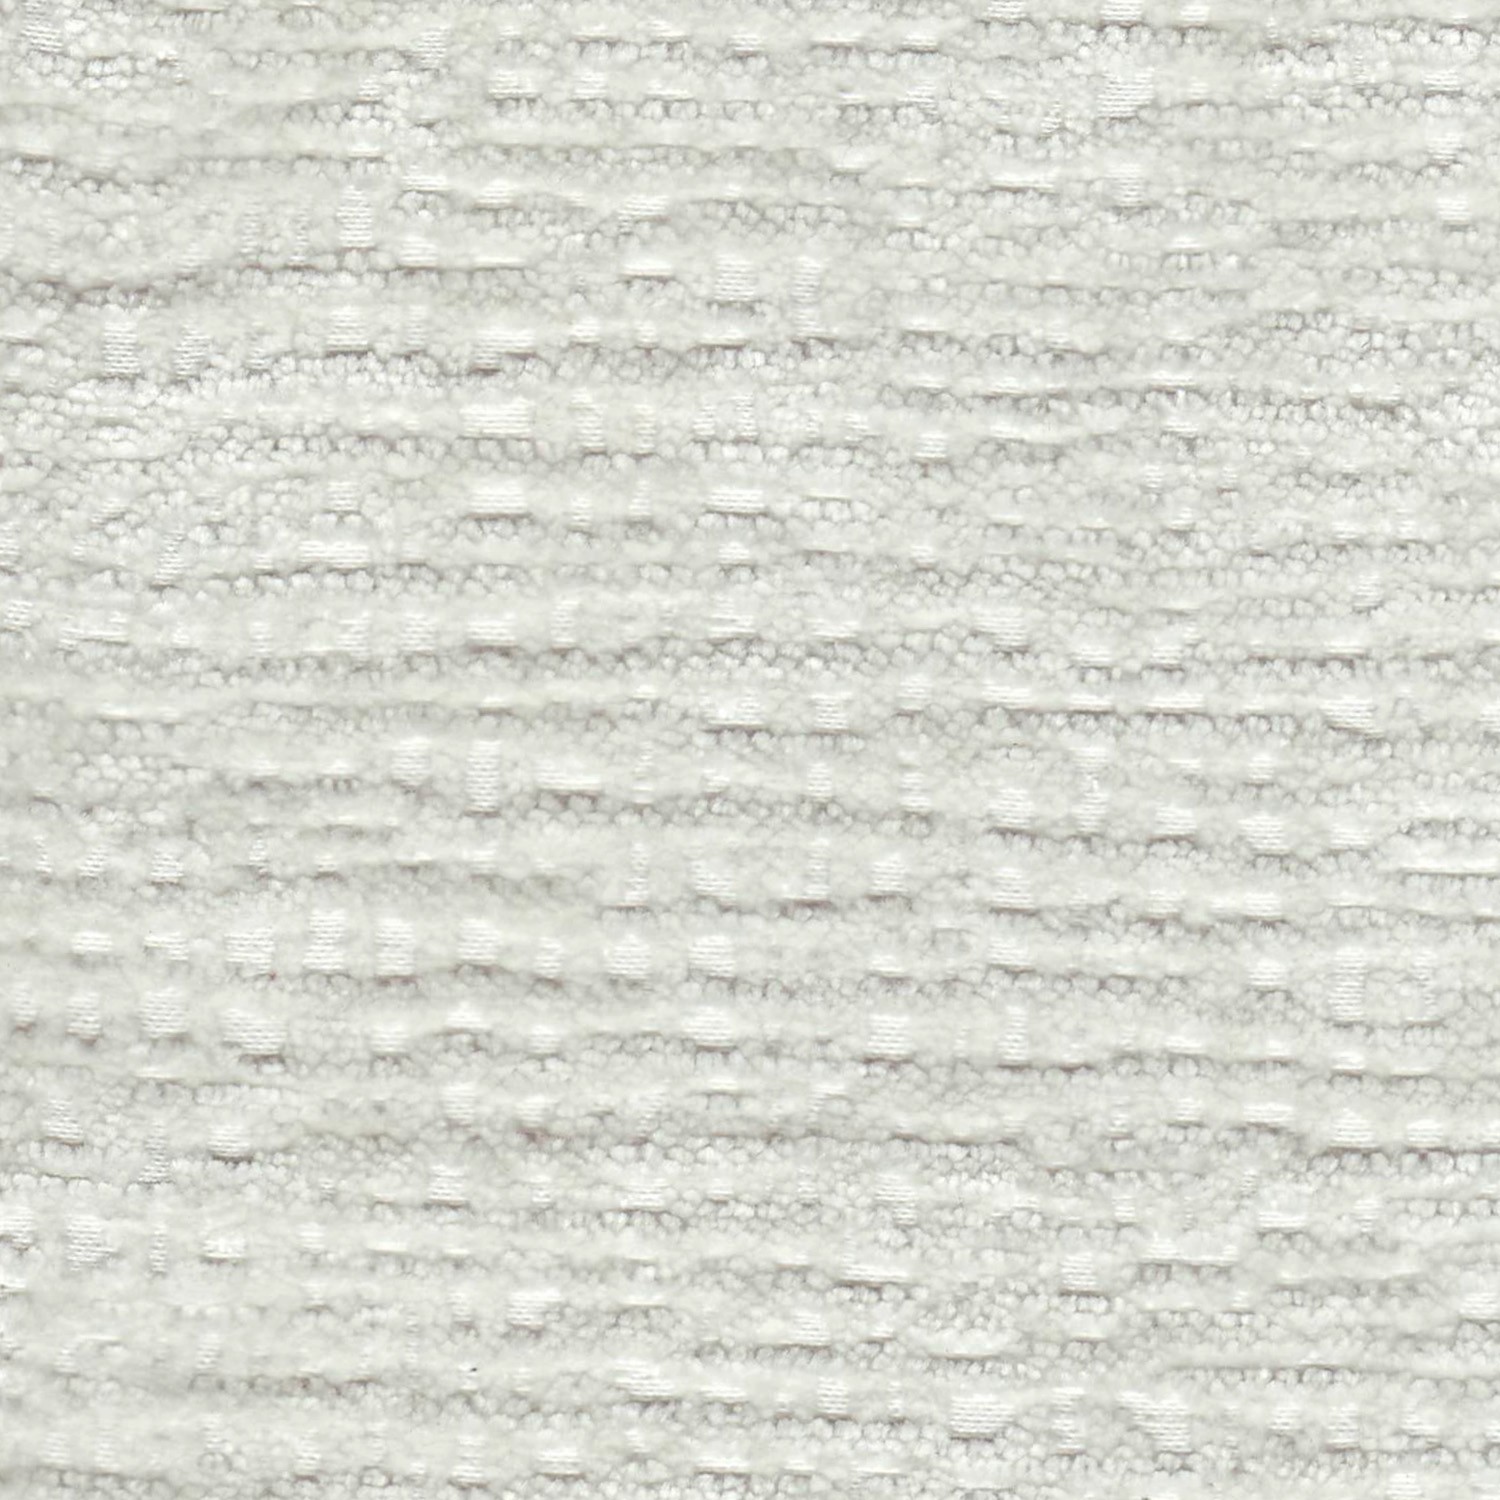 E-ROLIN/WHITE - Multi Purpose Fabric Suitable For Drapery